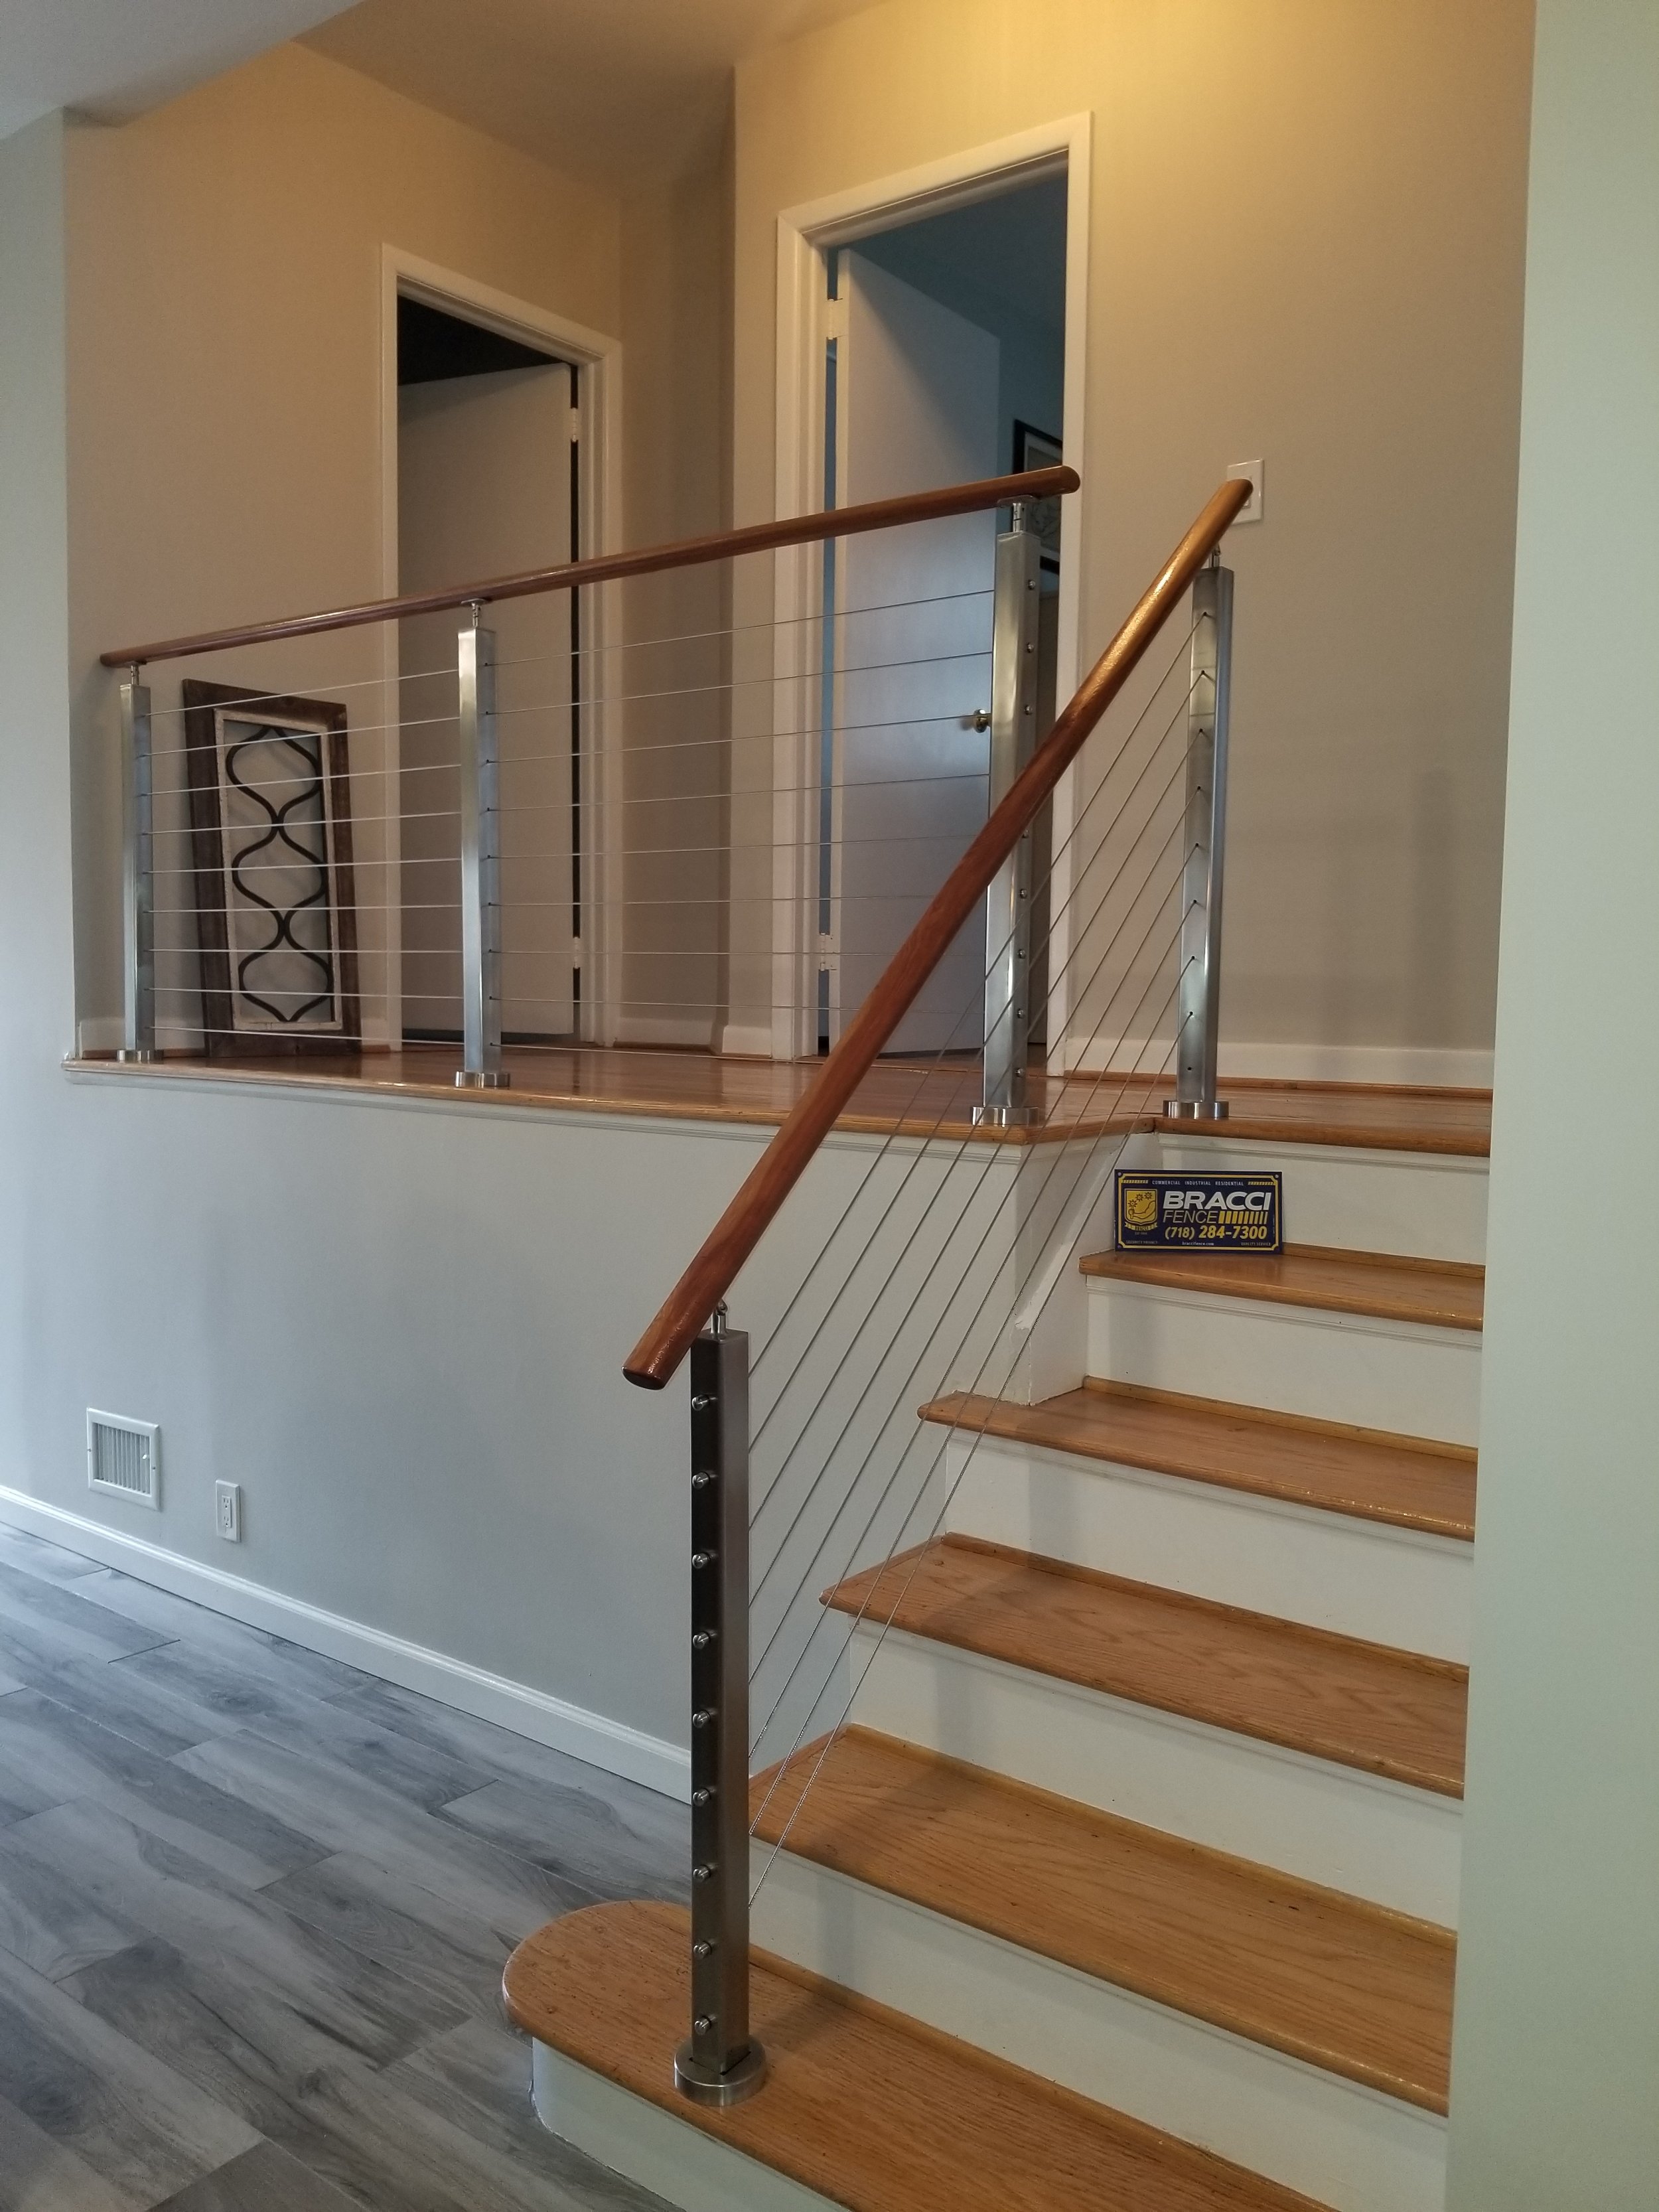 Steel and wood indoor railings